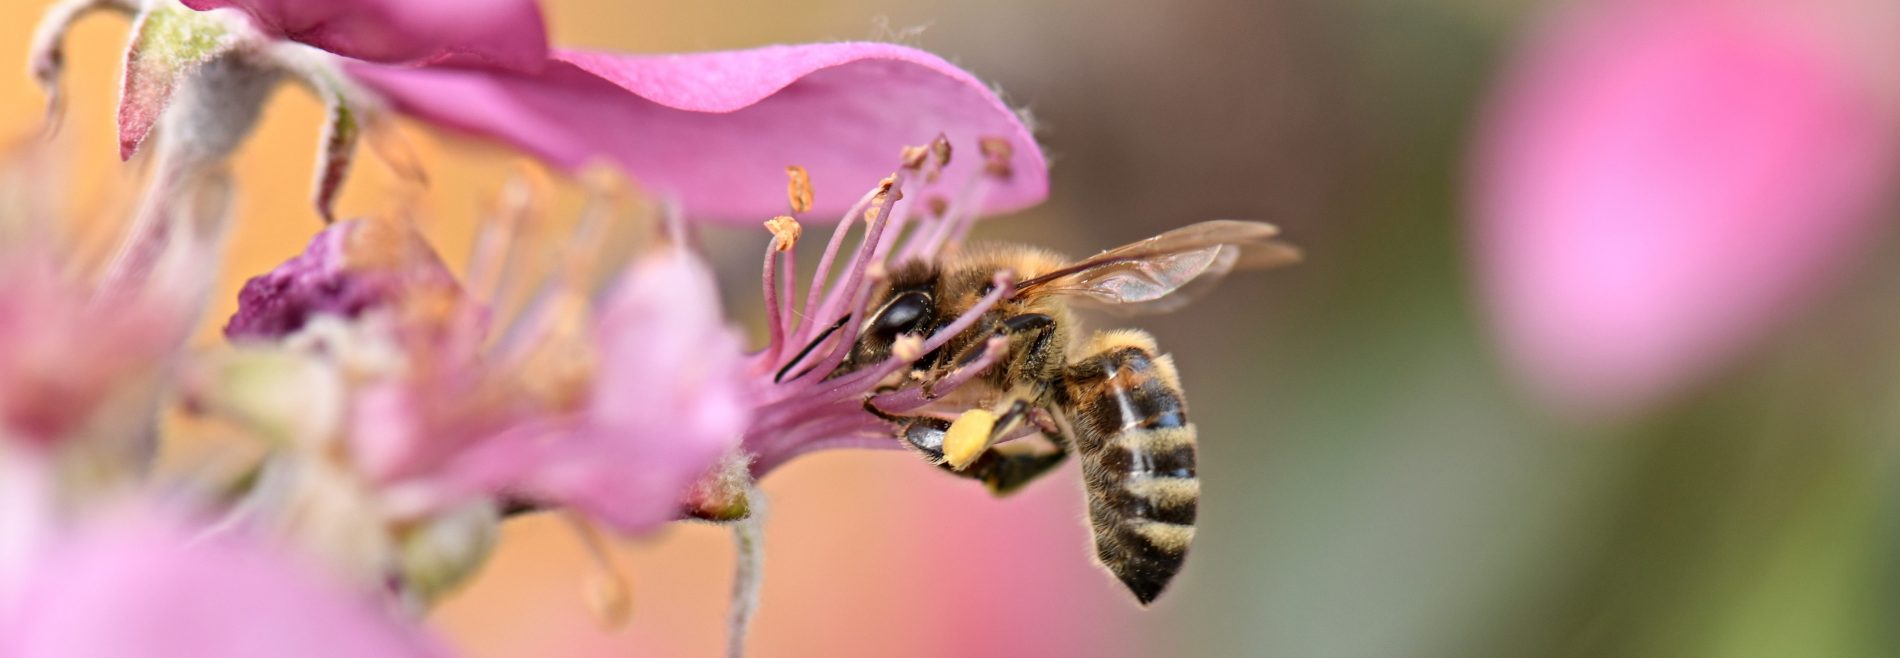 abeille-sur-fleurs-roses-aspect-ratio-1640x568